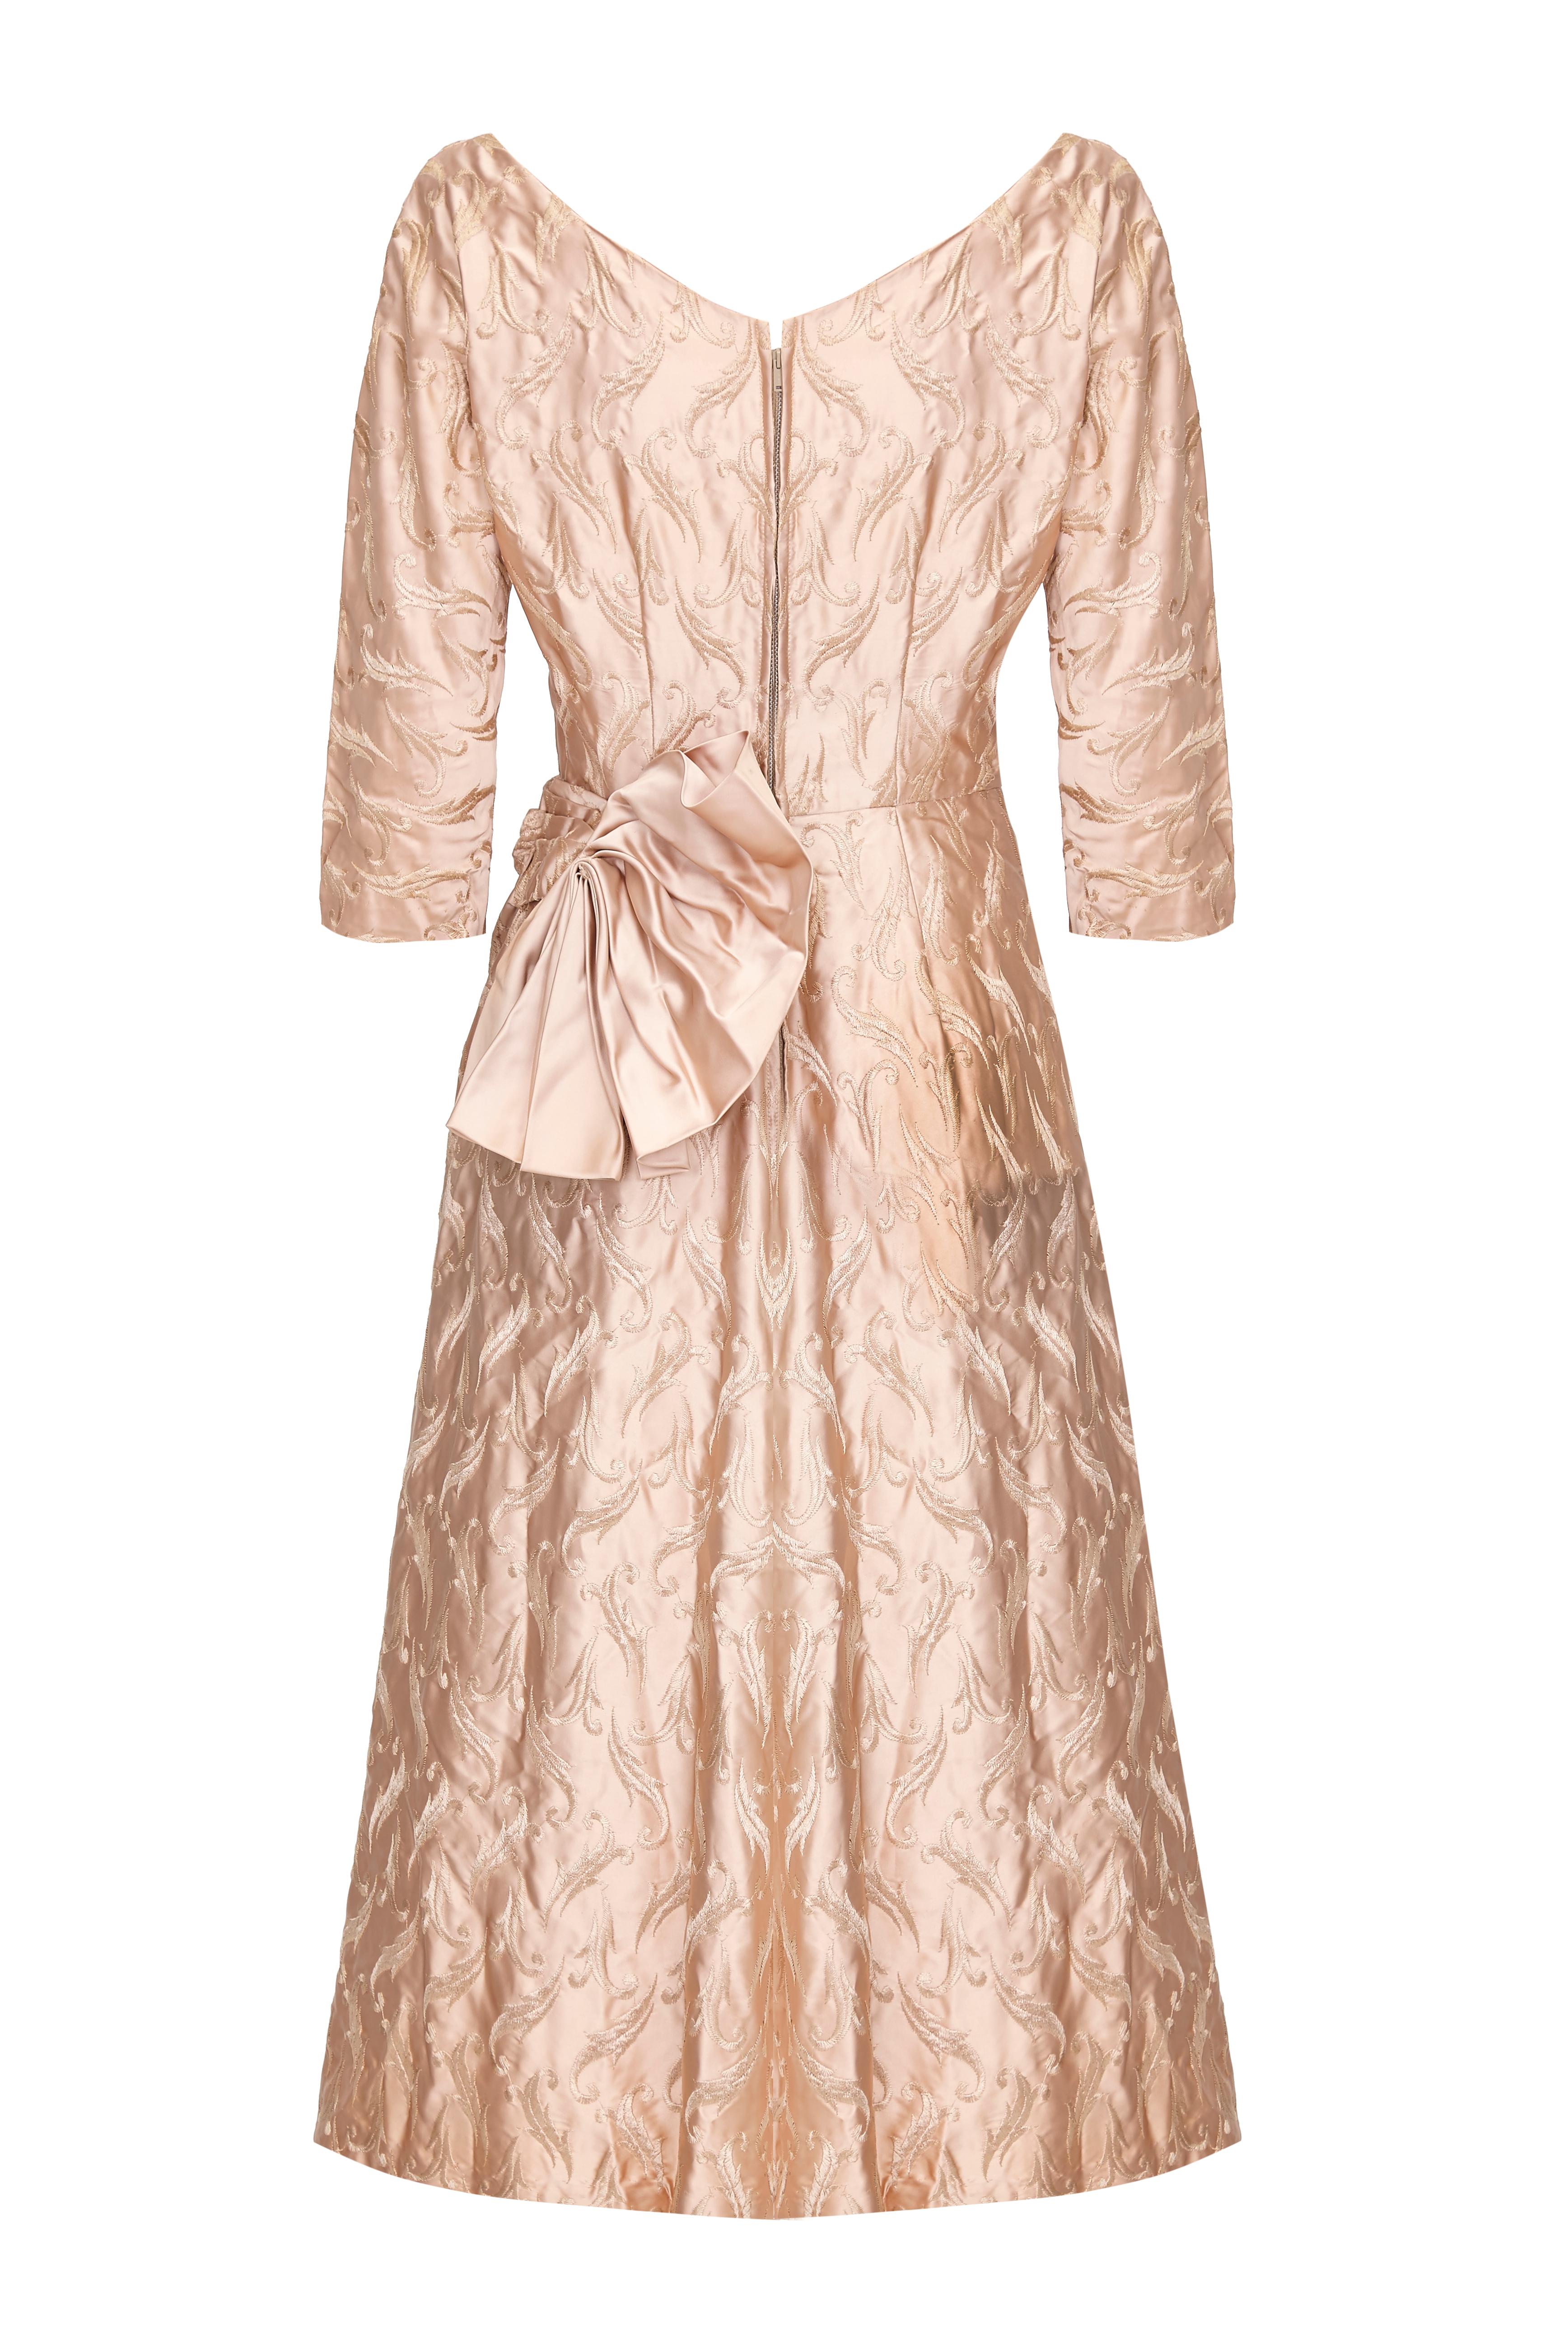 Wunderschönes originales amerikanisches Kleid aus den 1950er Jahren in antikem, roségoldenem Satin mit Stickereien überall.  Dieses hübsche Kleidungsstück hat dreiviertellange Ärmel, einen herzförmigen Ausschnitt, einen Unterrock aus Tüll für